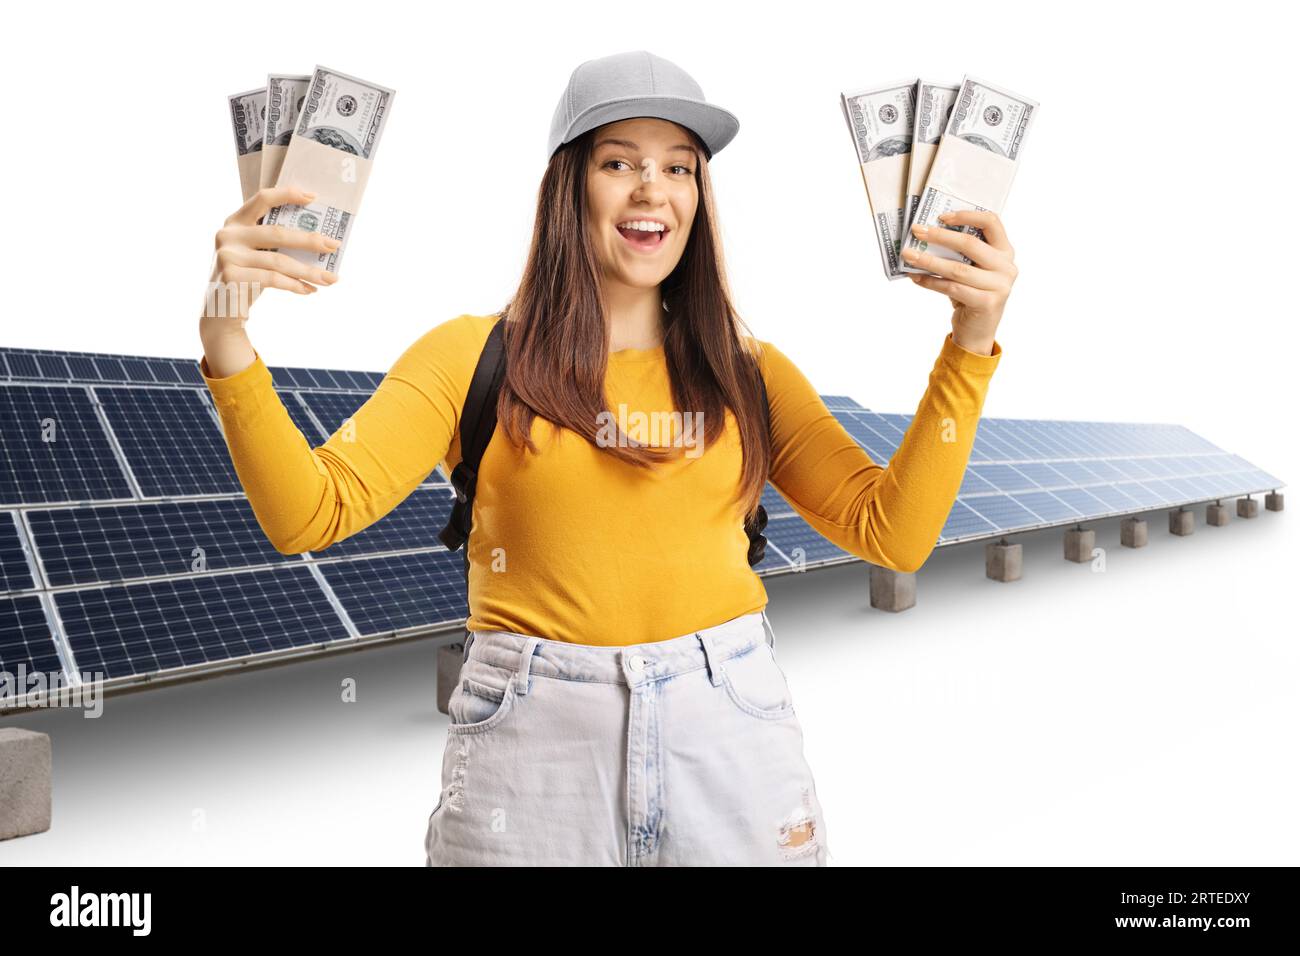 Junge lächelnde Studentin, die Geldstapel vor Photovoltaik auf weißem Hintergrund hält Stockfoto